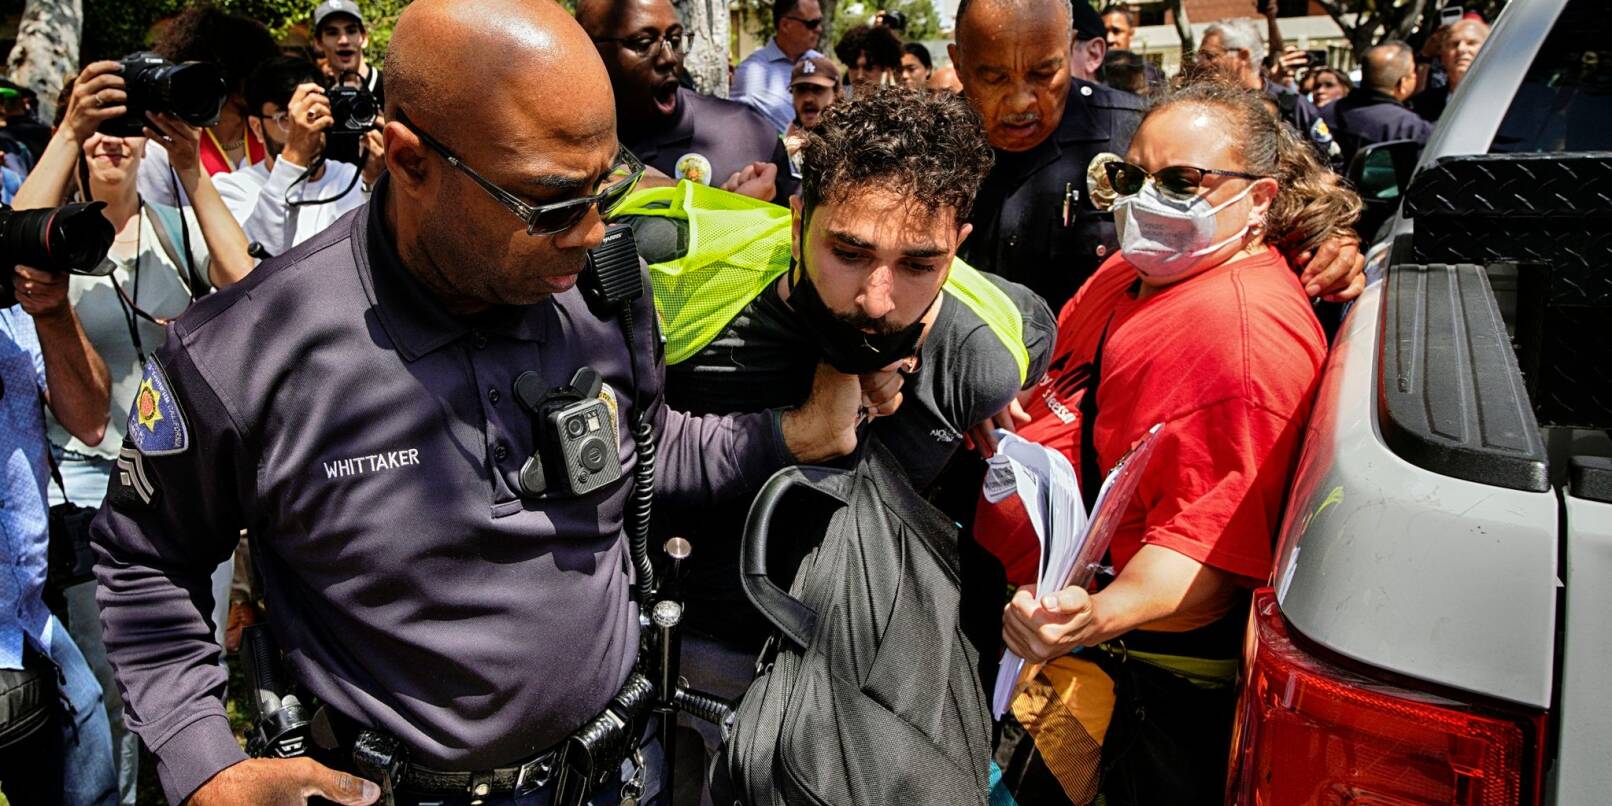 Ein Demonstrant der University of Southern California wird während einer pro-palästinensischen Besetzung des Alumni-Parks in Los Angeles von Beamten des USC Department of Public Safety festgehalten.